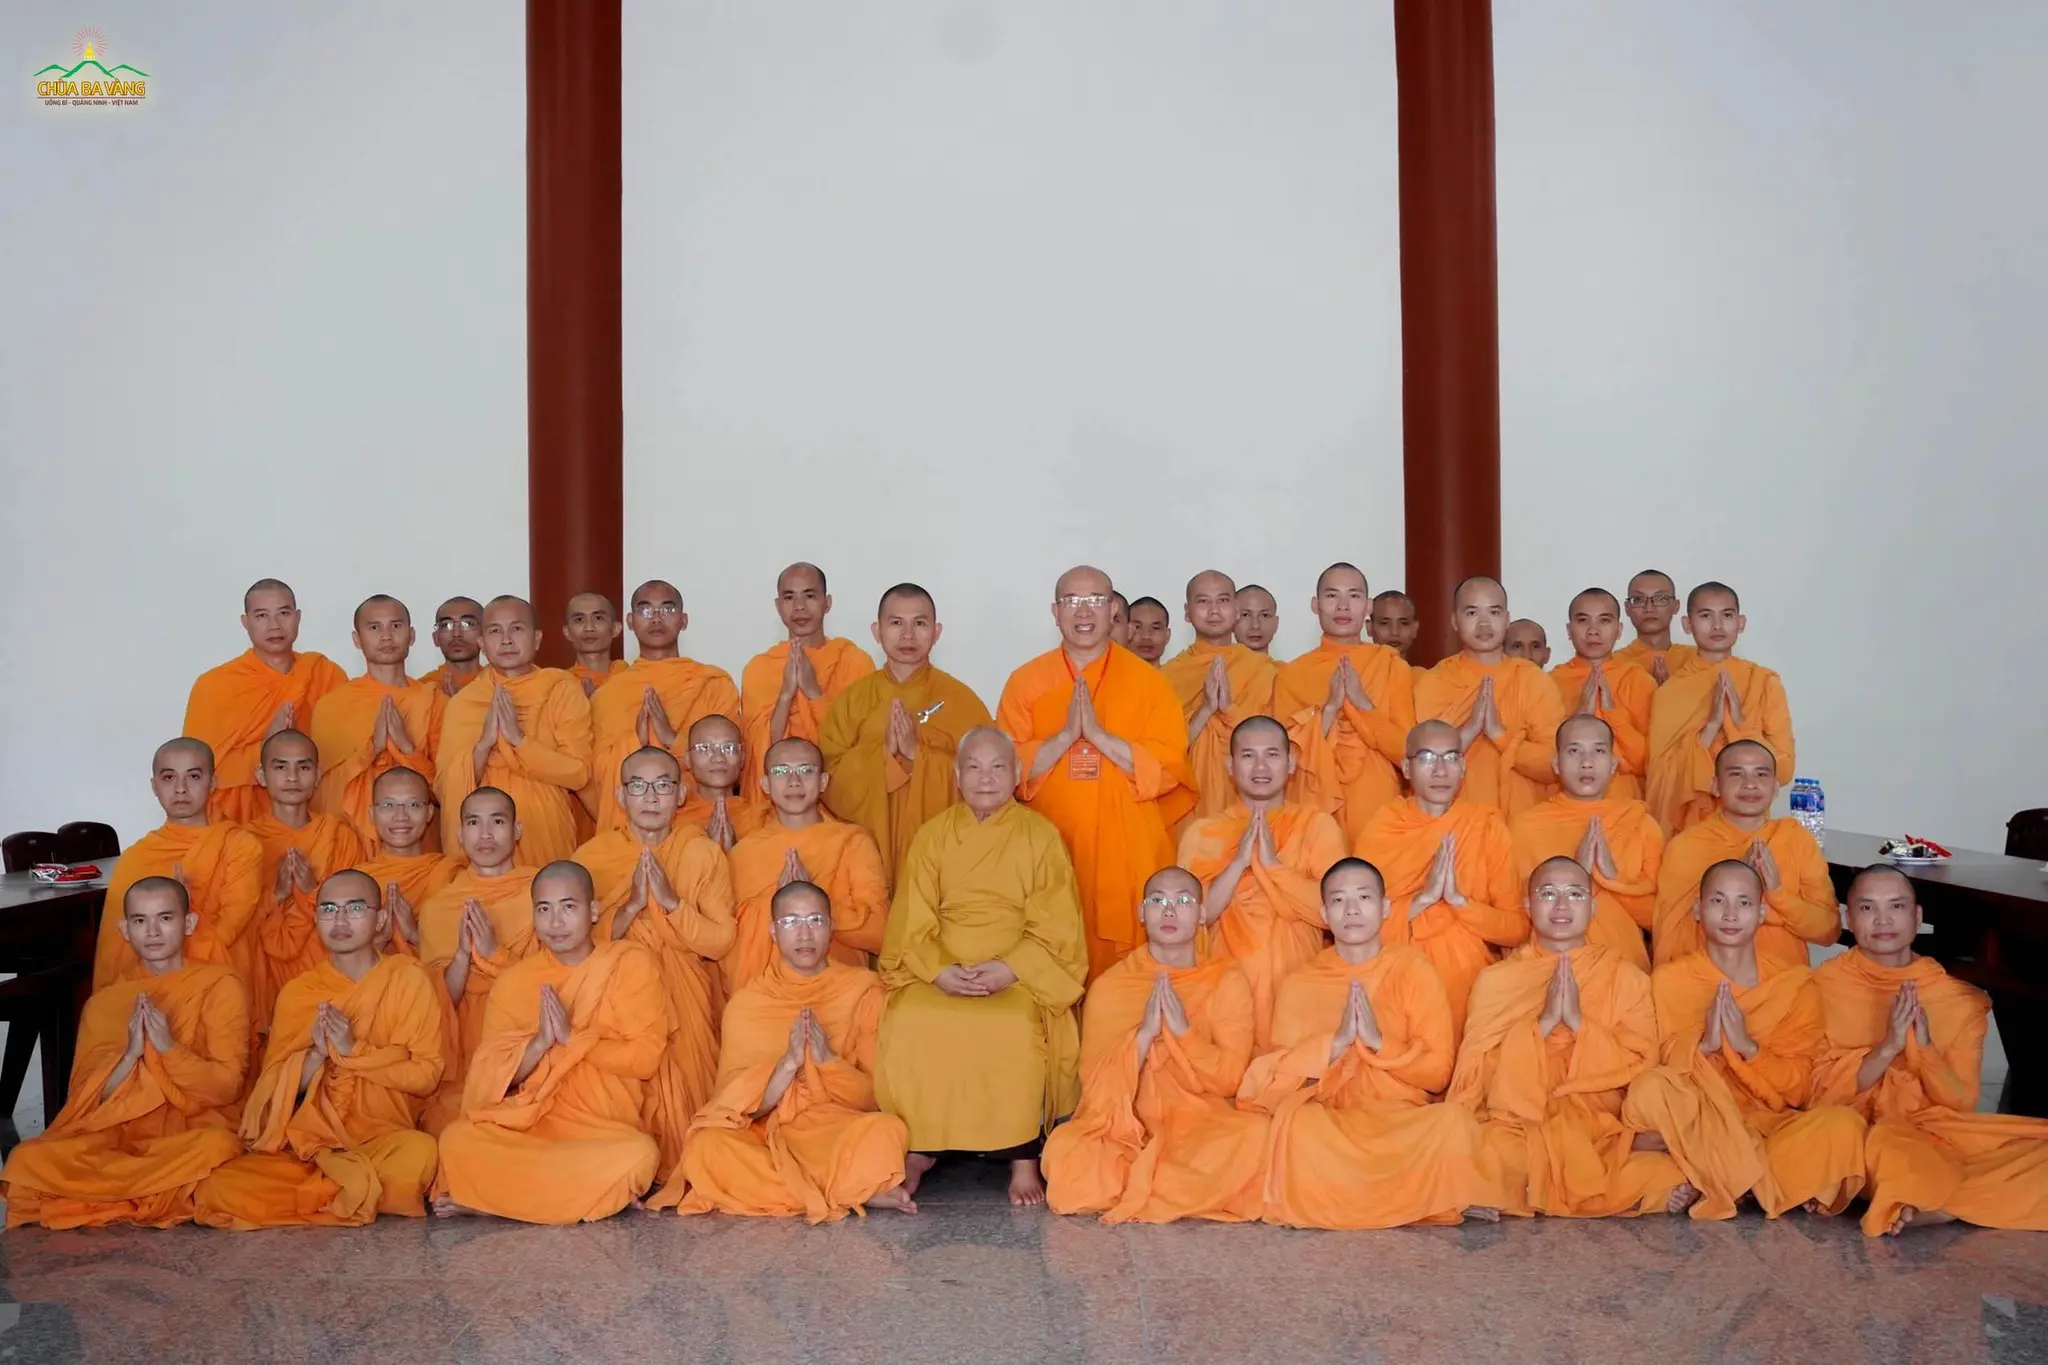 Đoàn chư Tăng chùa Ba Vàng cùng Thầy Thích Trúc Thái Thành chụp ảnh lưu niệm bên Hòa Thượng Thích Thiện Nhơn